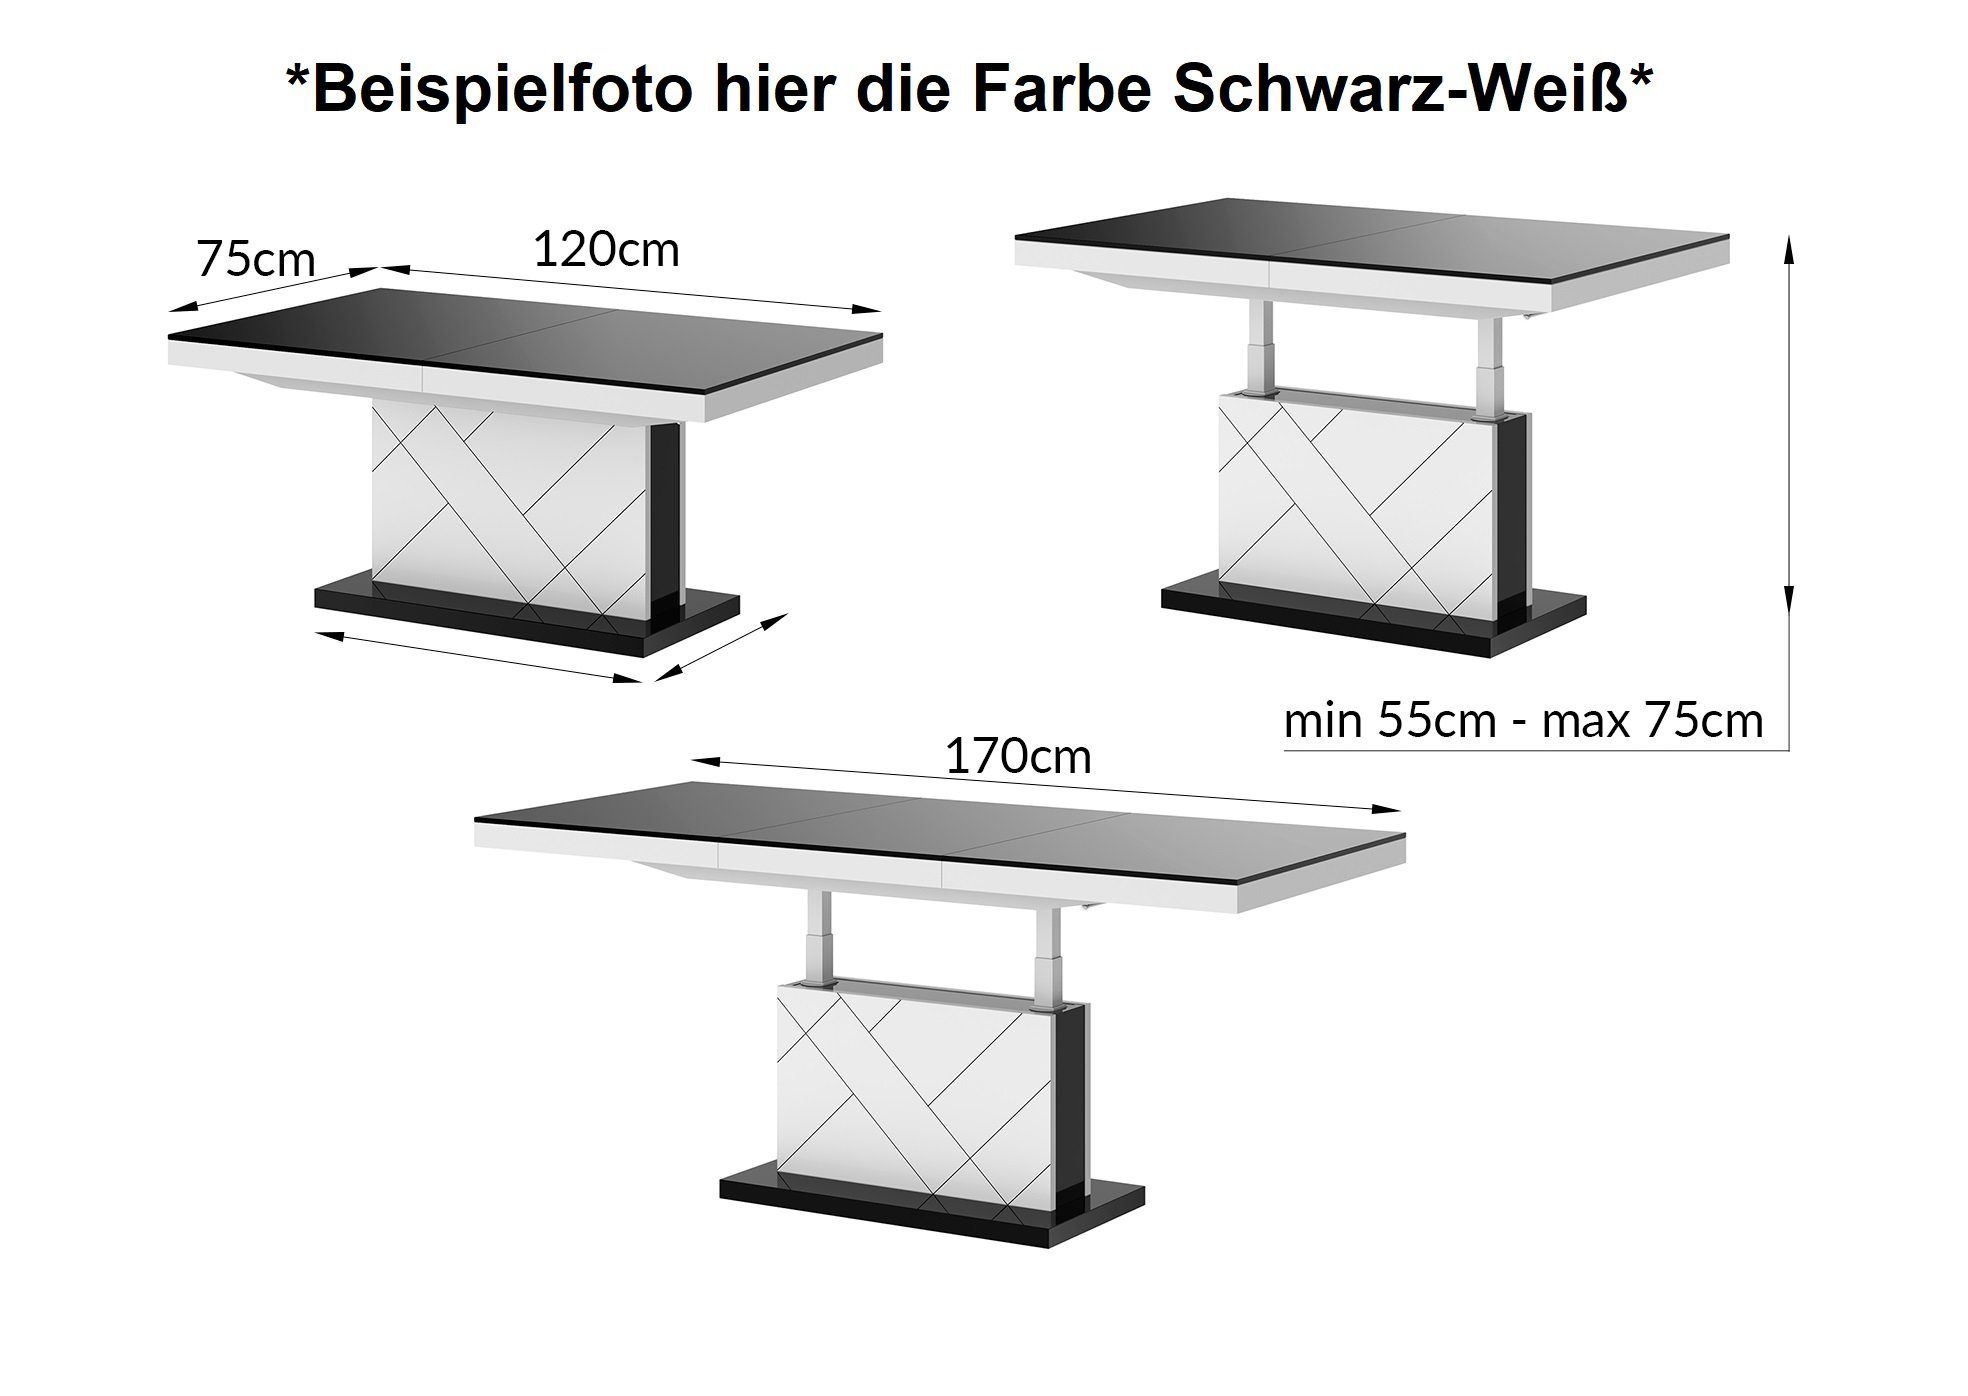 Hochglanz / ausziehbar Grau höhenverstellbar / Tisch Weiß HM-333 Design Hochglanz Couchtisch Grau Weiß designimpex Hochglanz